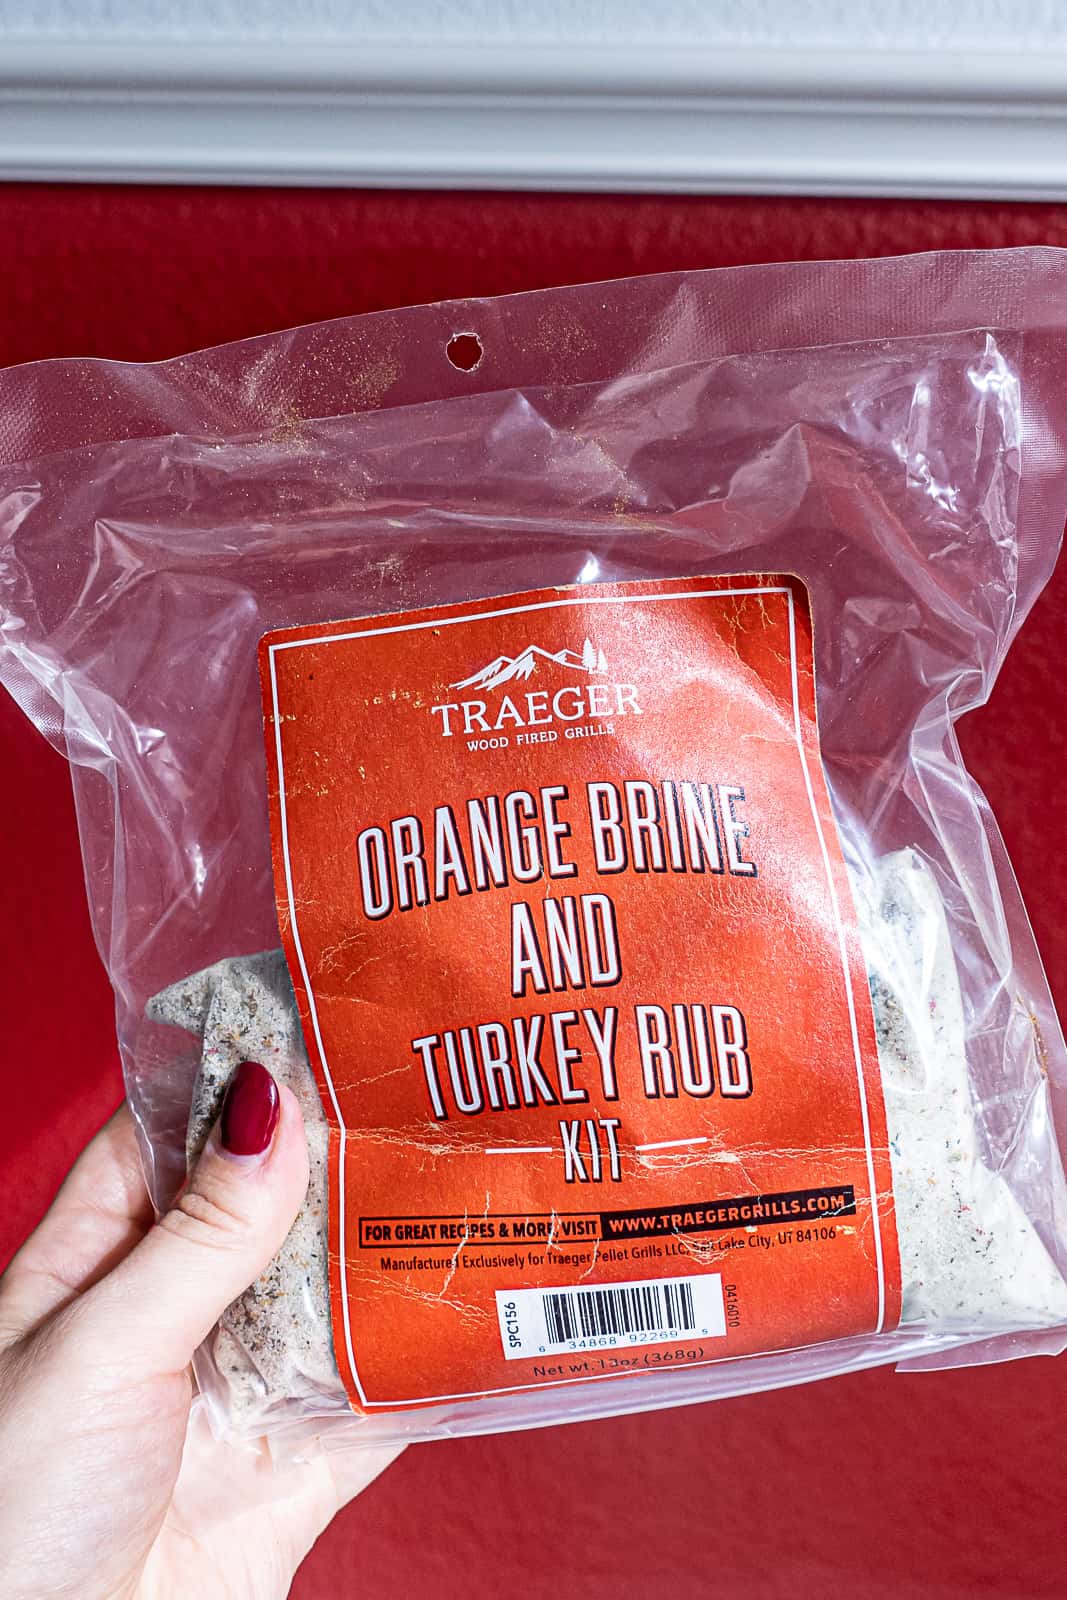 Holding a seasoning bag of Traeger orange brine and turkey rub kit from Amazon